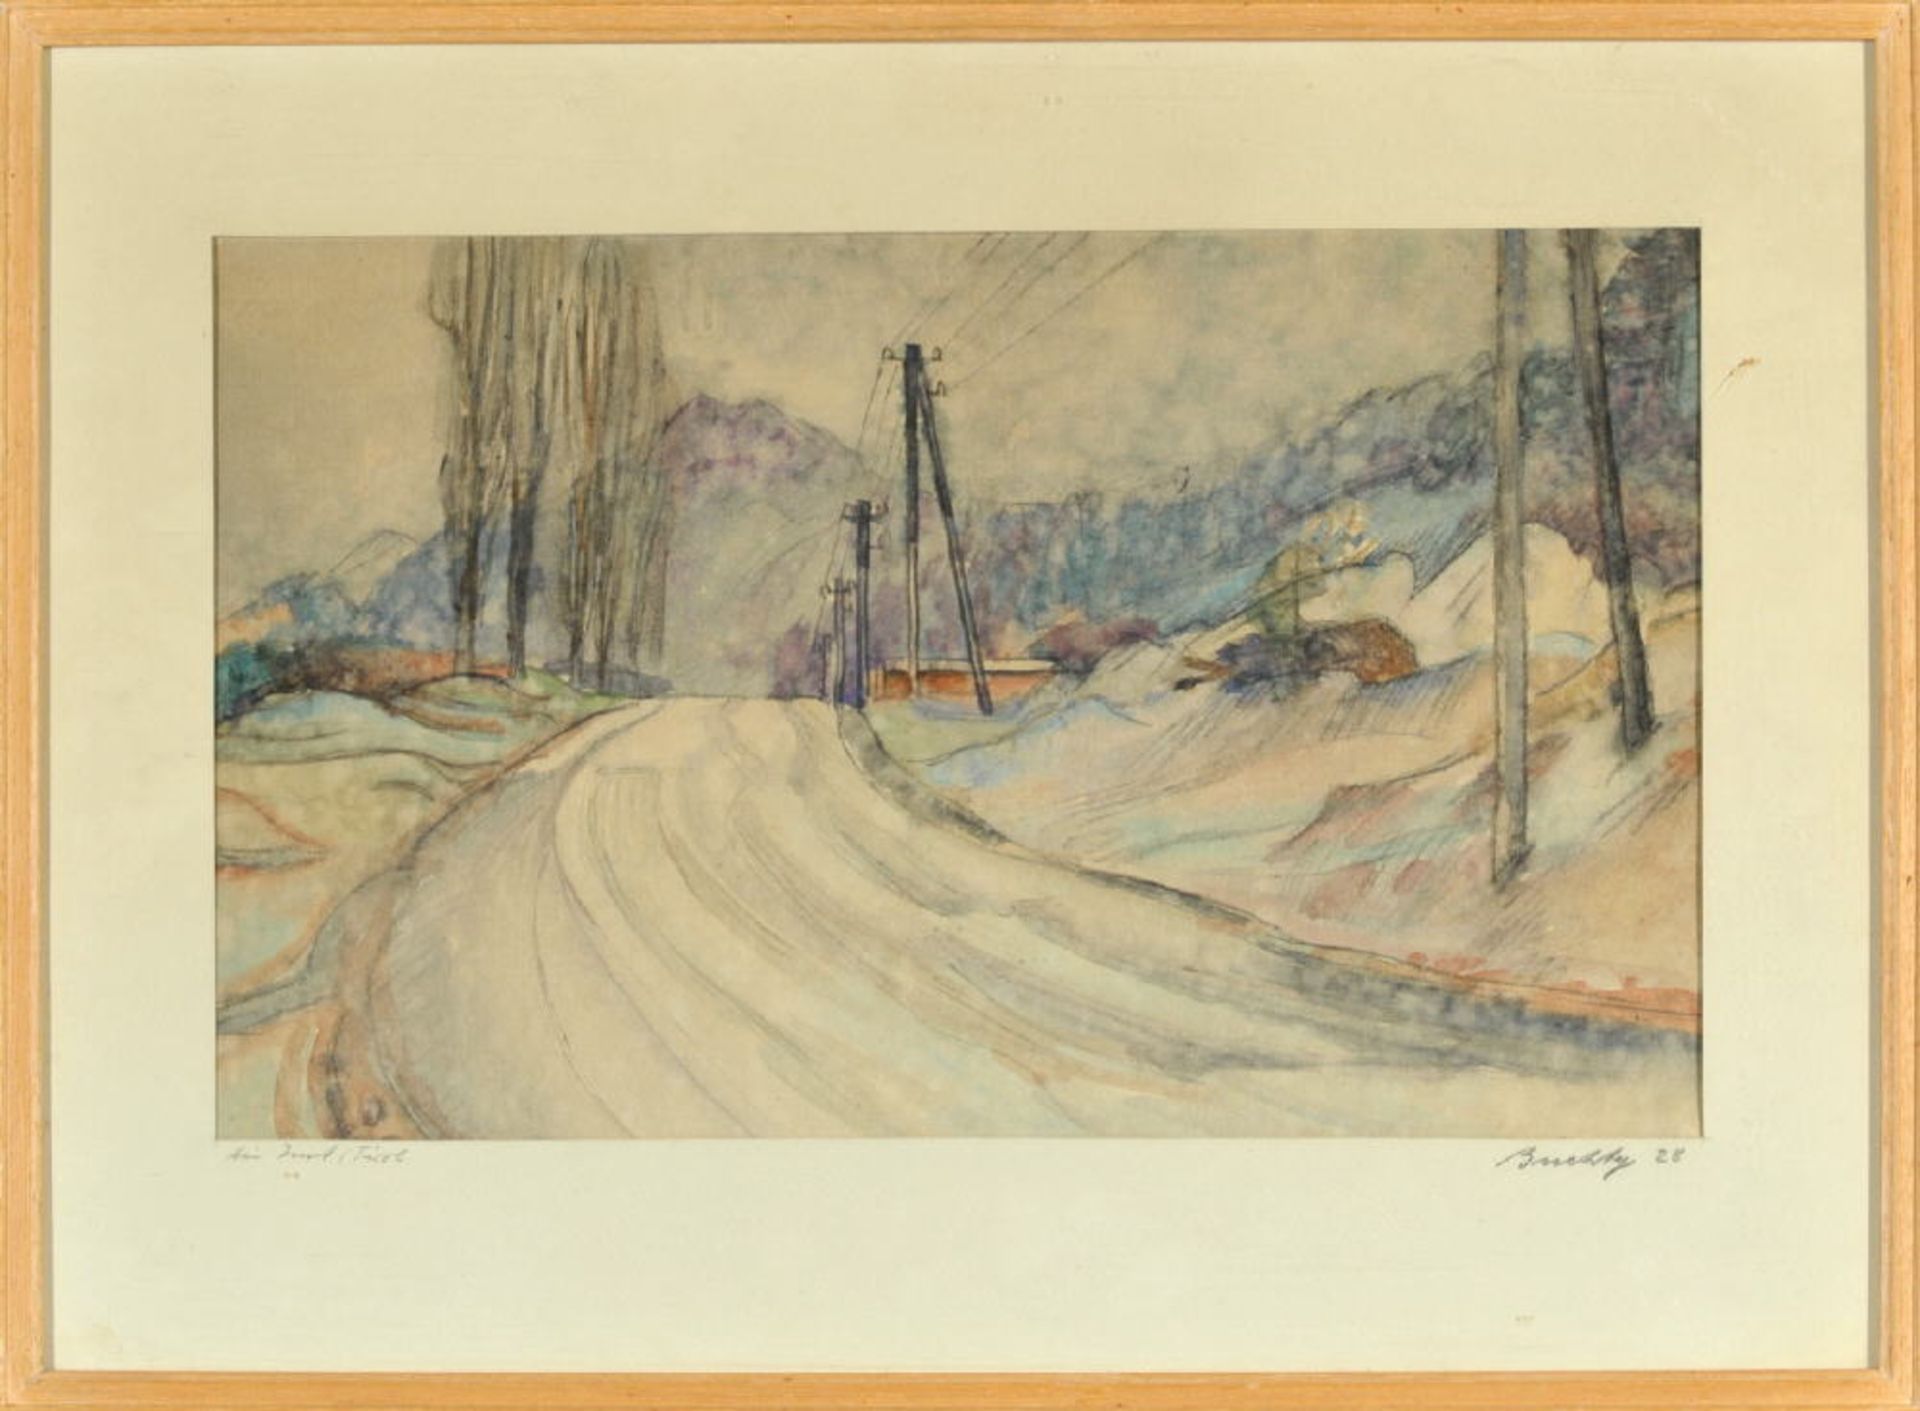 Buchty, Josef, 1896 Aachen - 1966 Garmisch-PartenkirchenAquarell, 27 x 44 cm, betit. " Bei Imst/